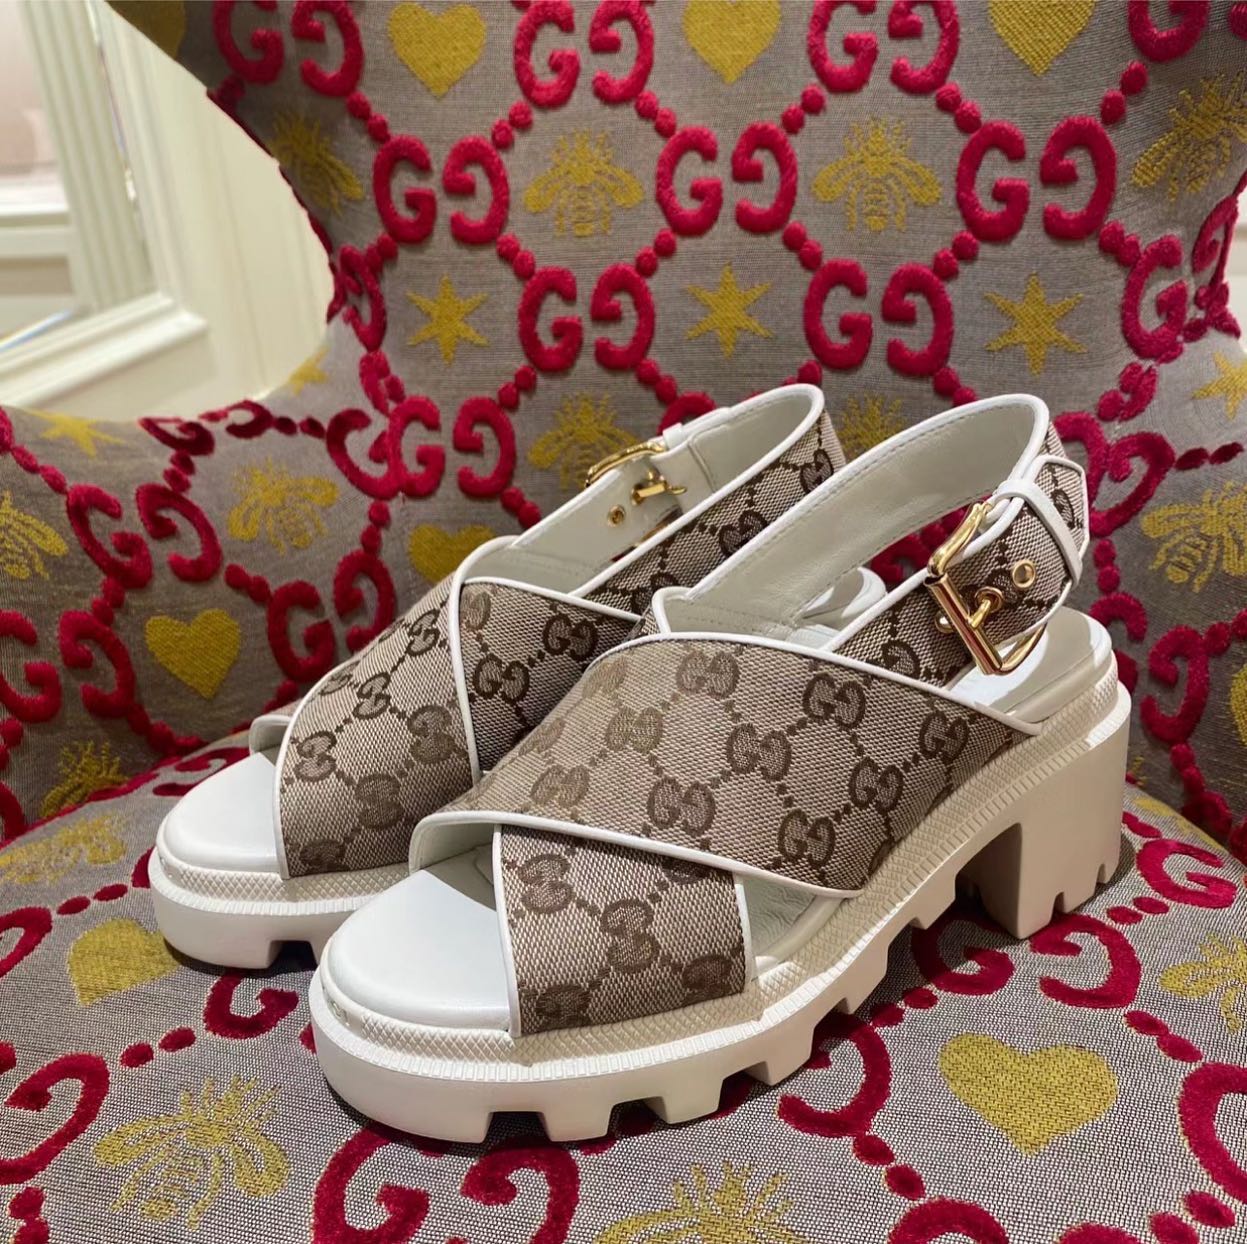 Gucci Summer Sandals for Women